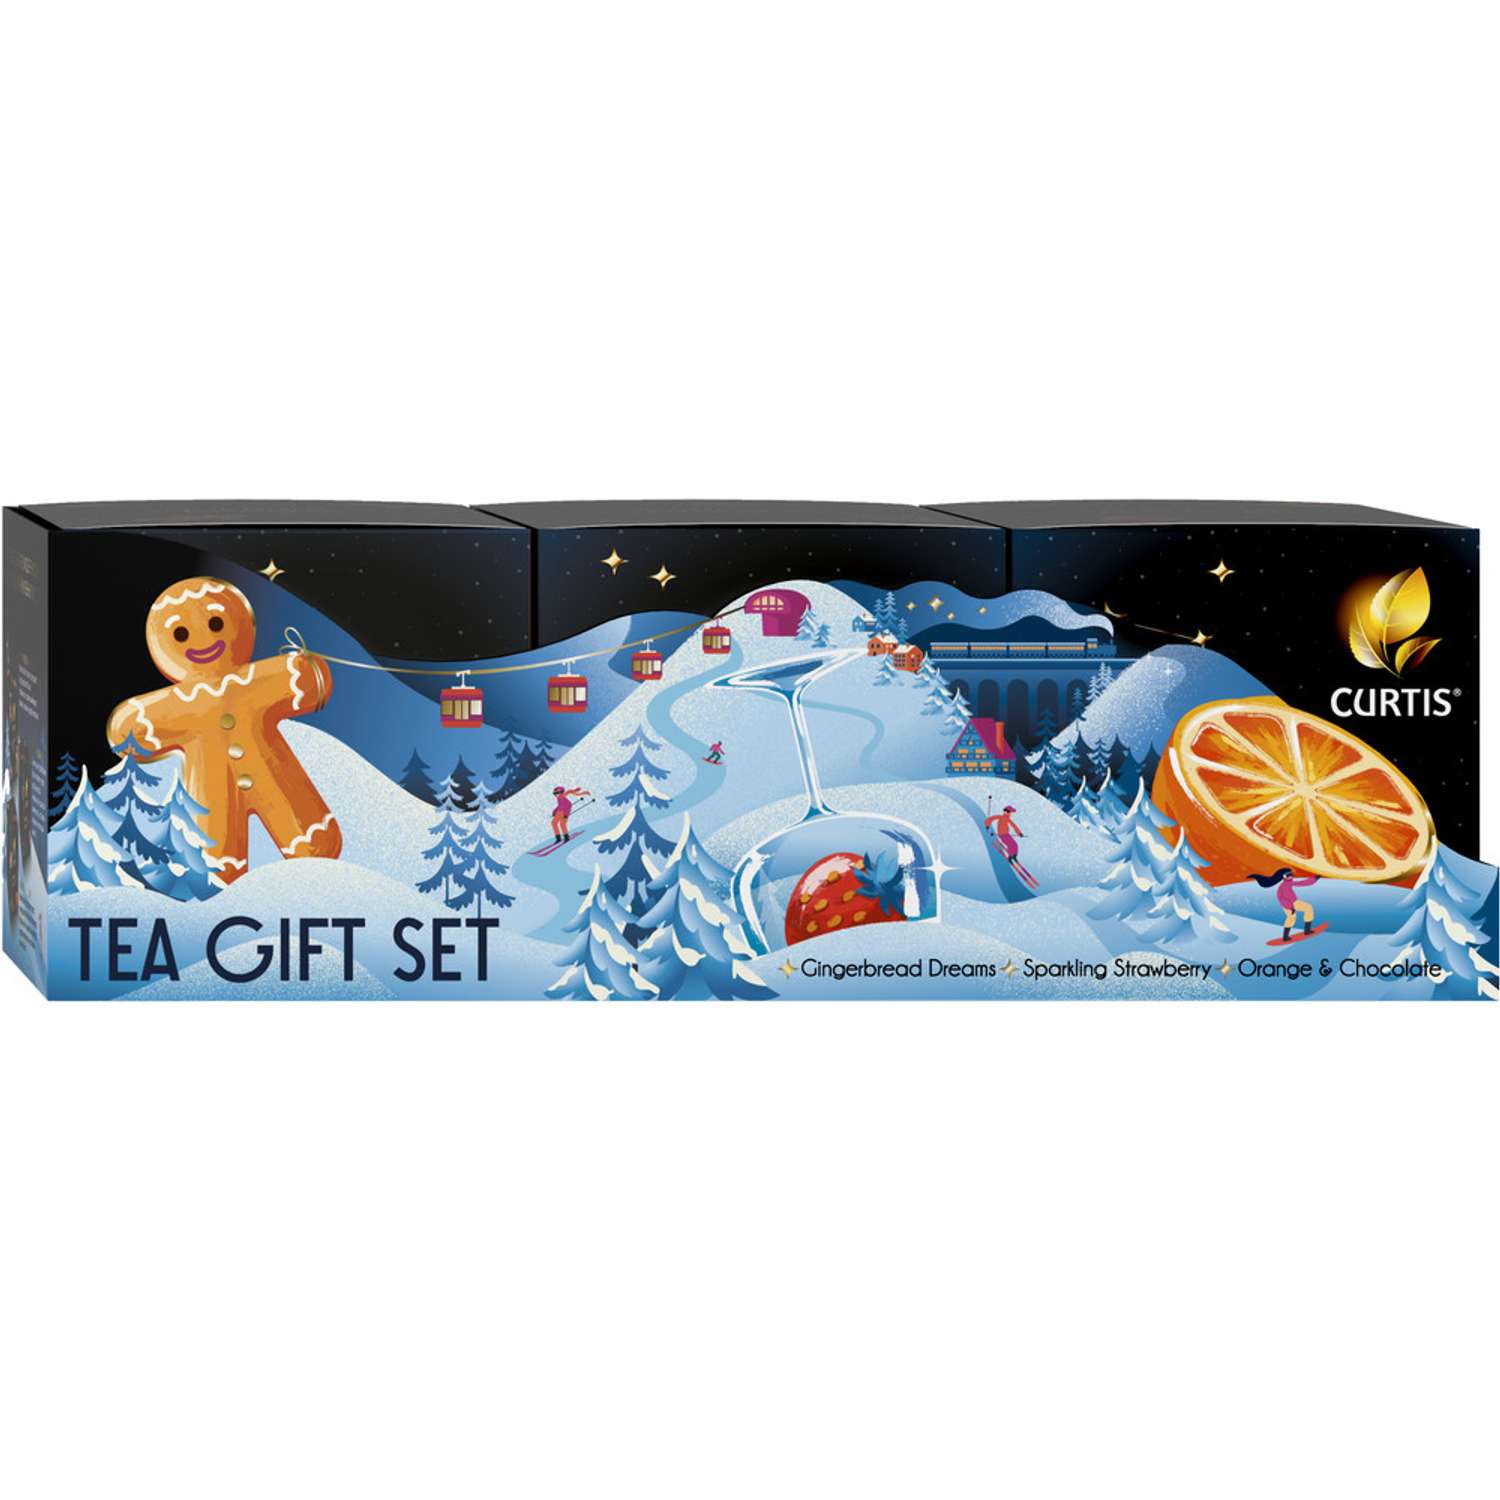 Чай подарочный Curtis Tea Gift Sets чёрный аромат пакет 63г - фото 4